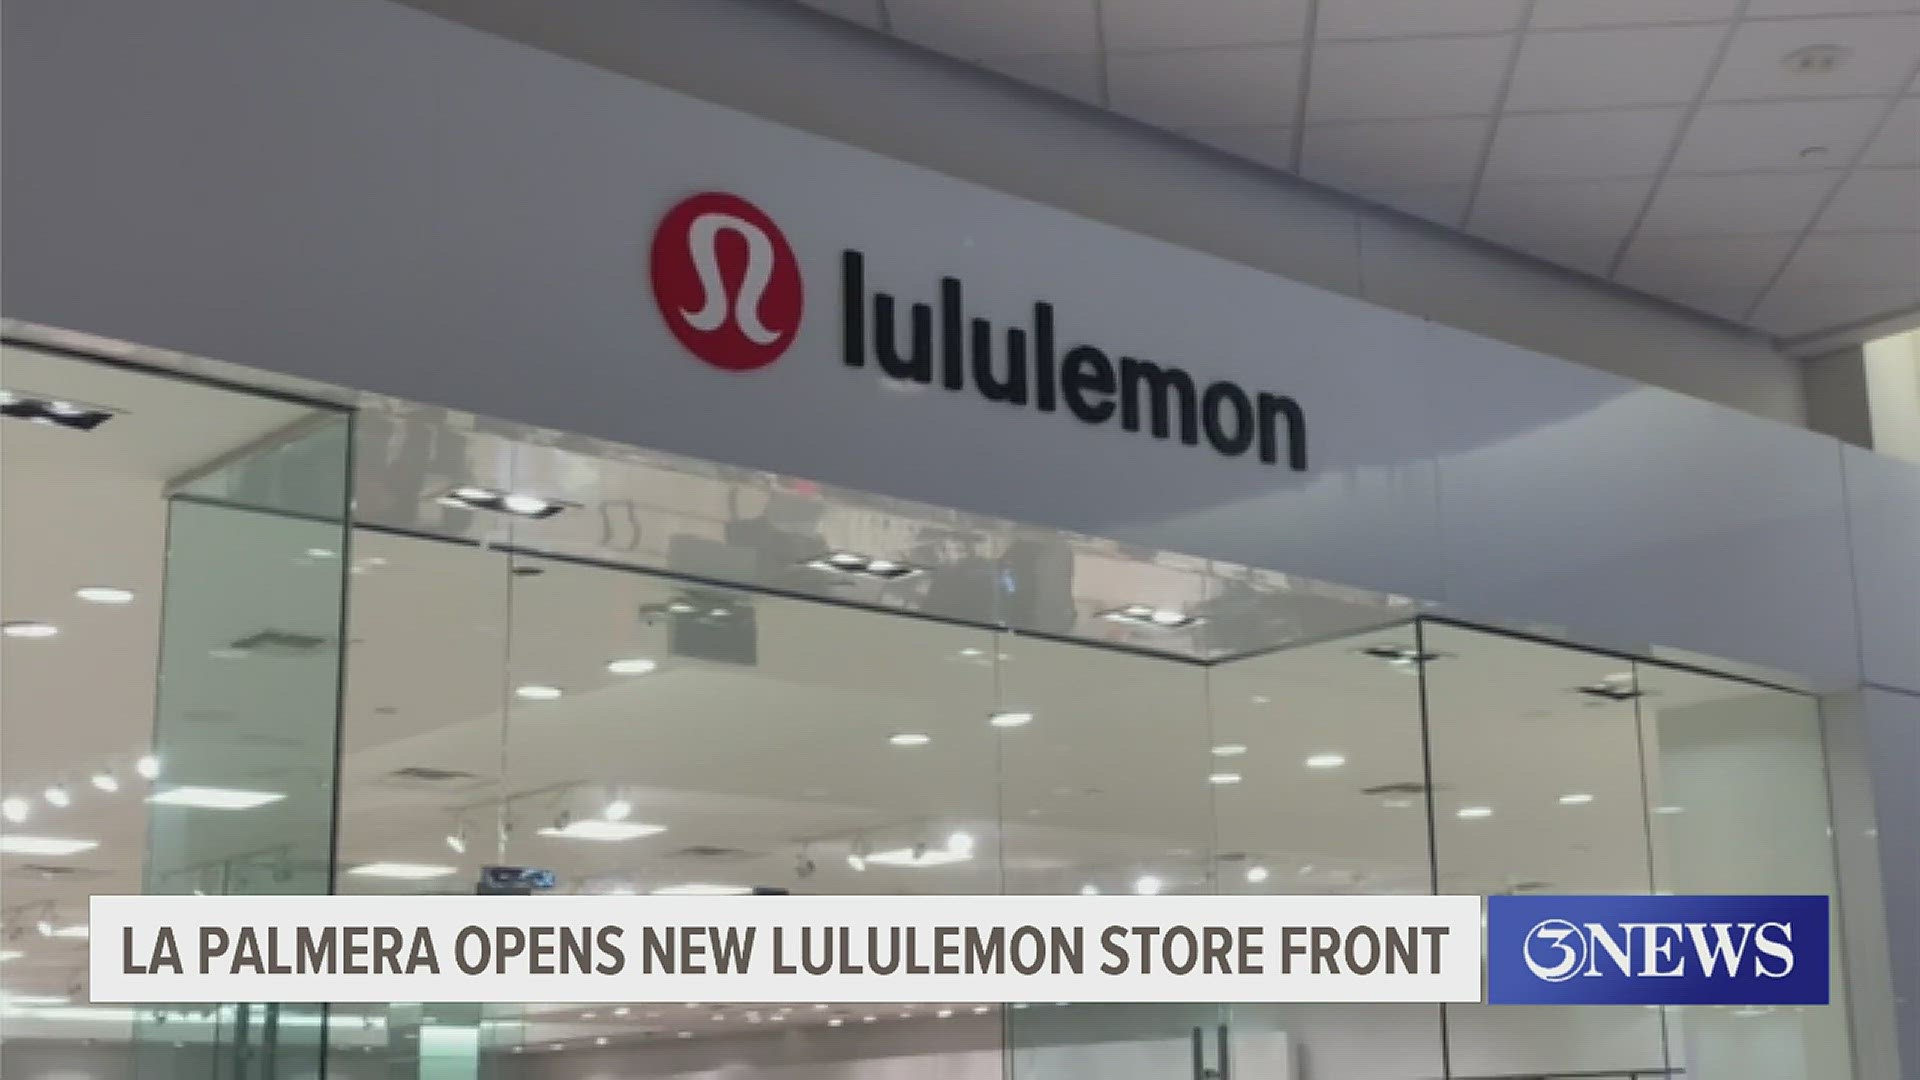 La Palmera celebrates opening of Lululemon store